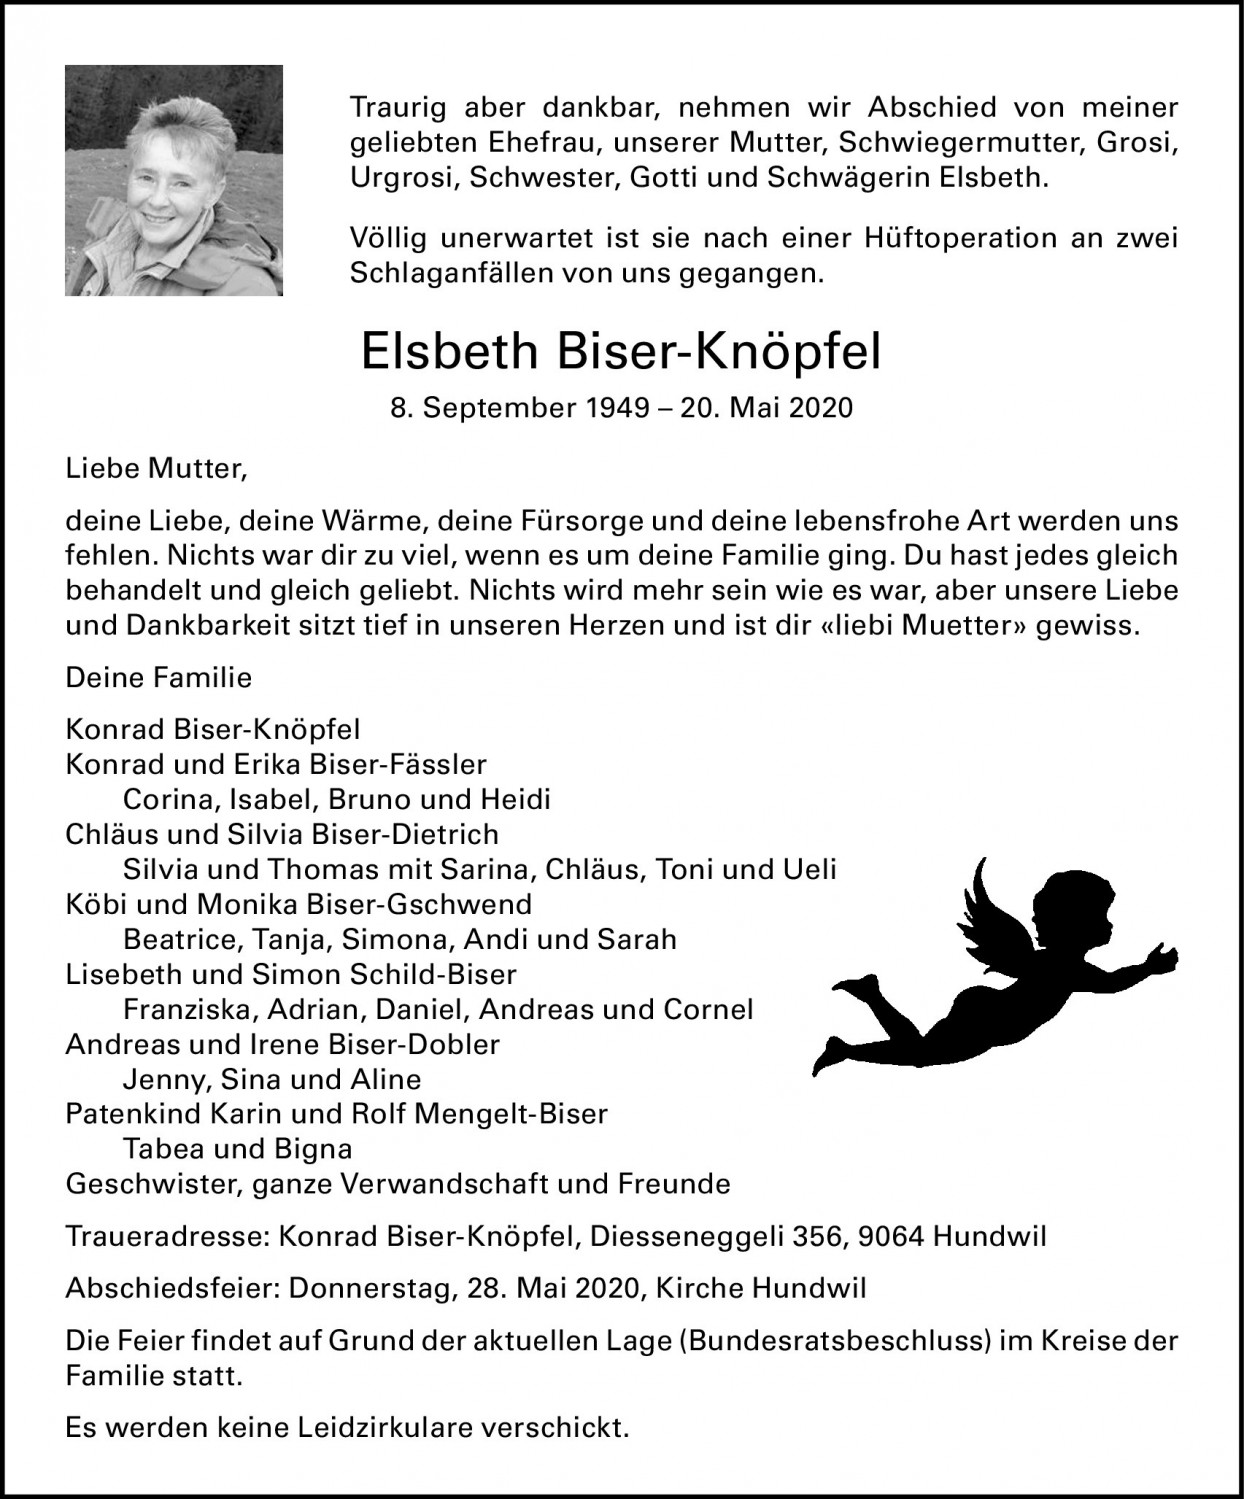 Elsbeth Biser-Knöpfel